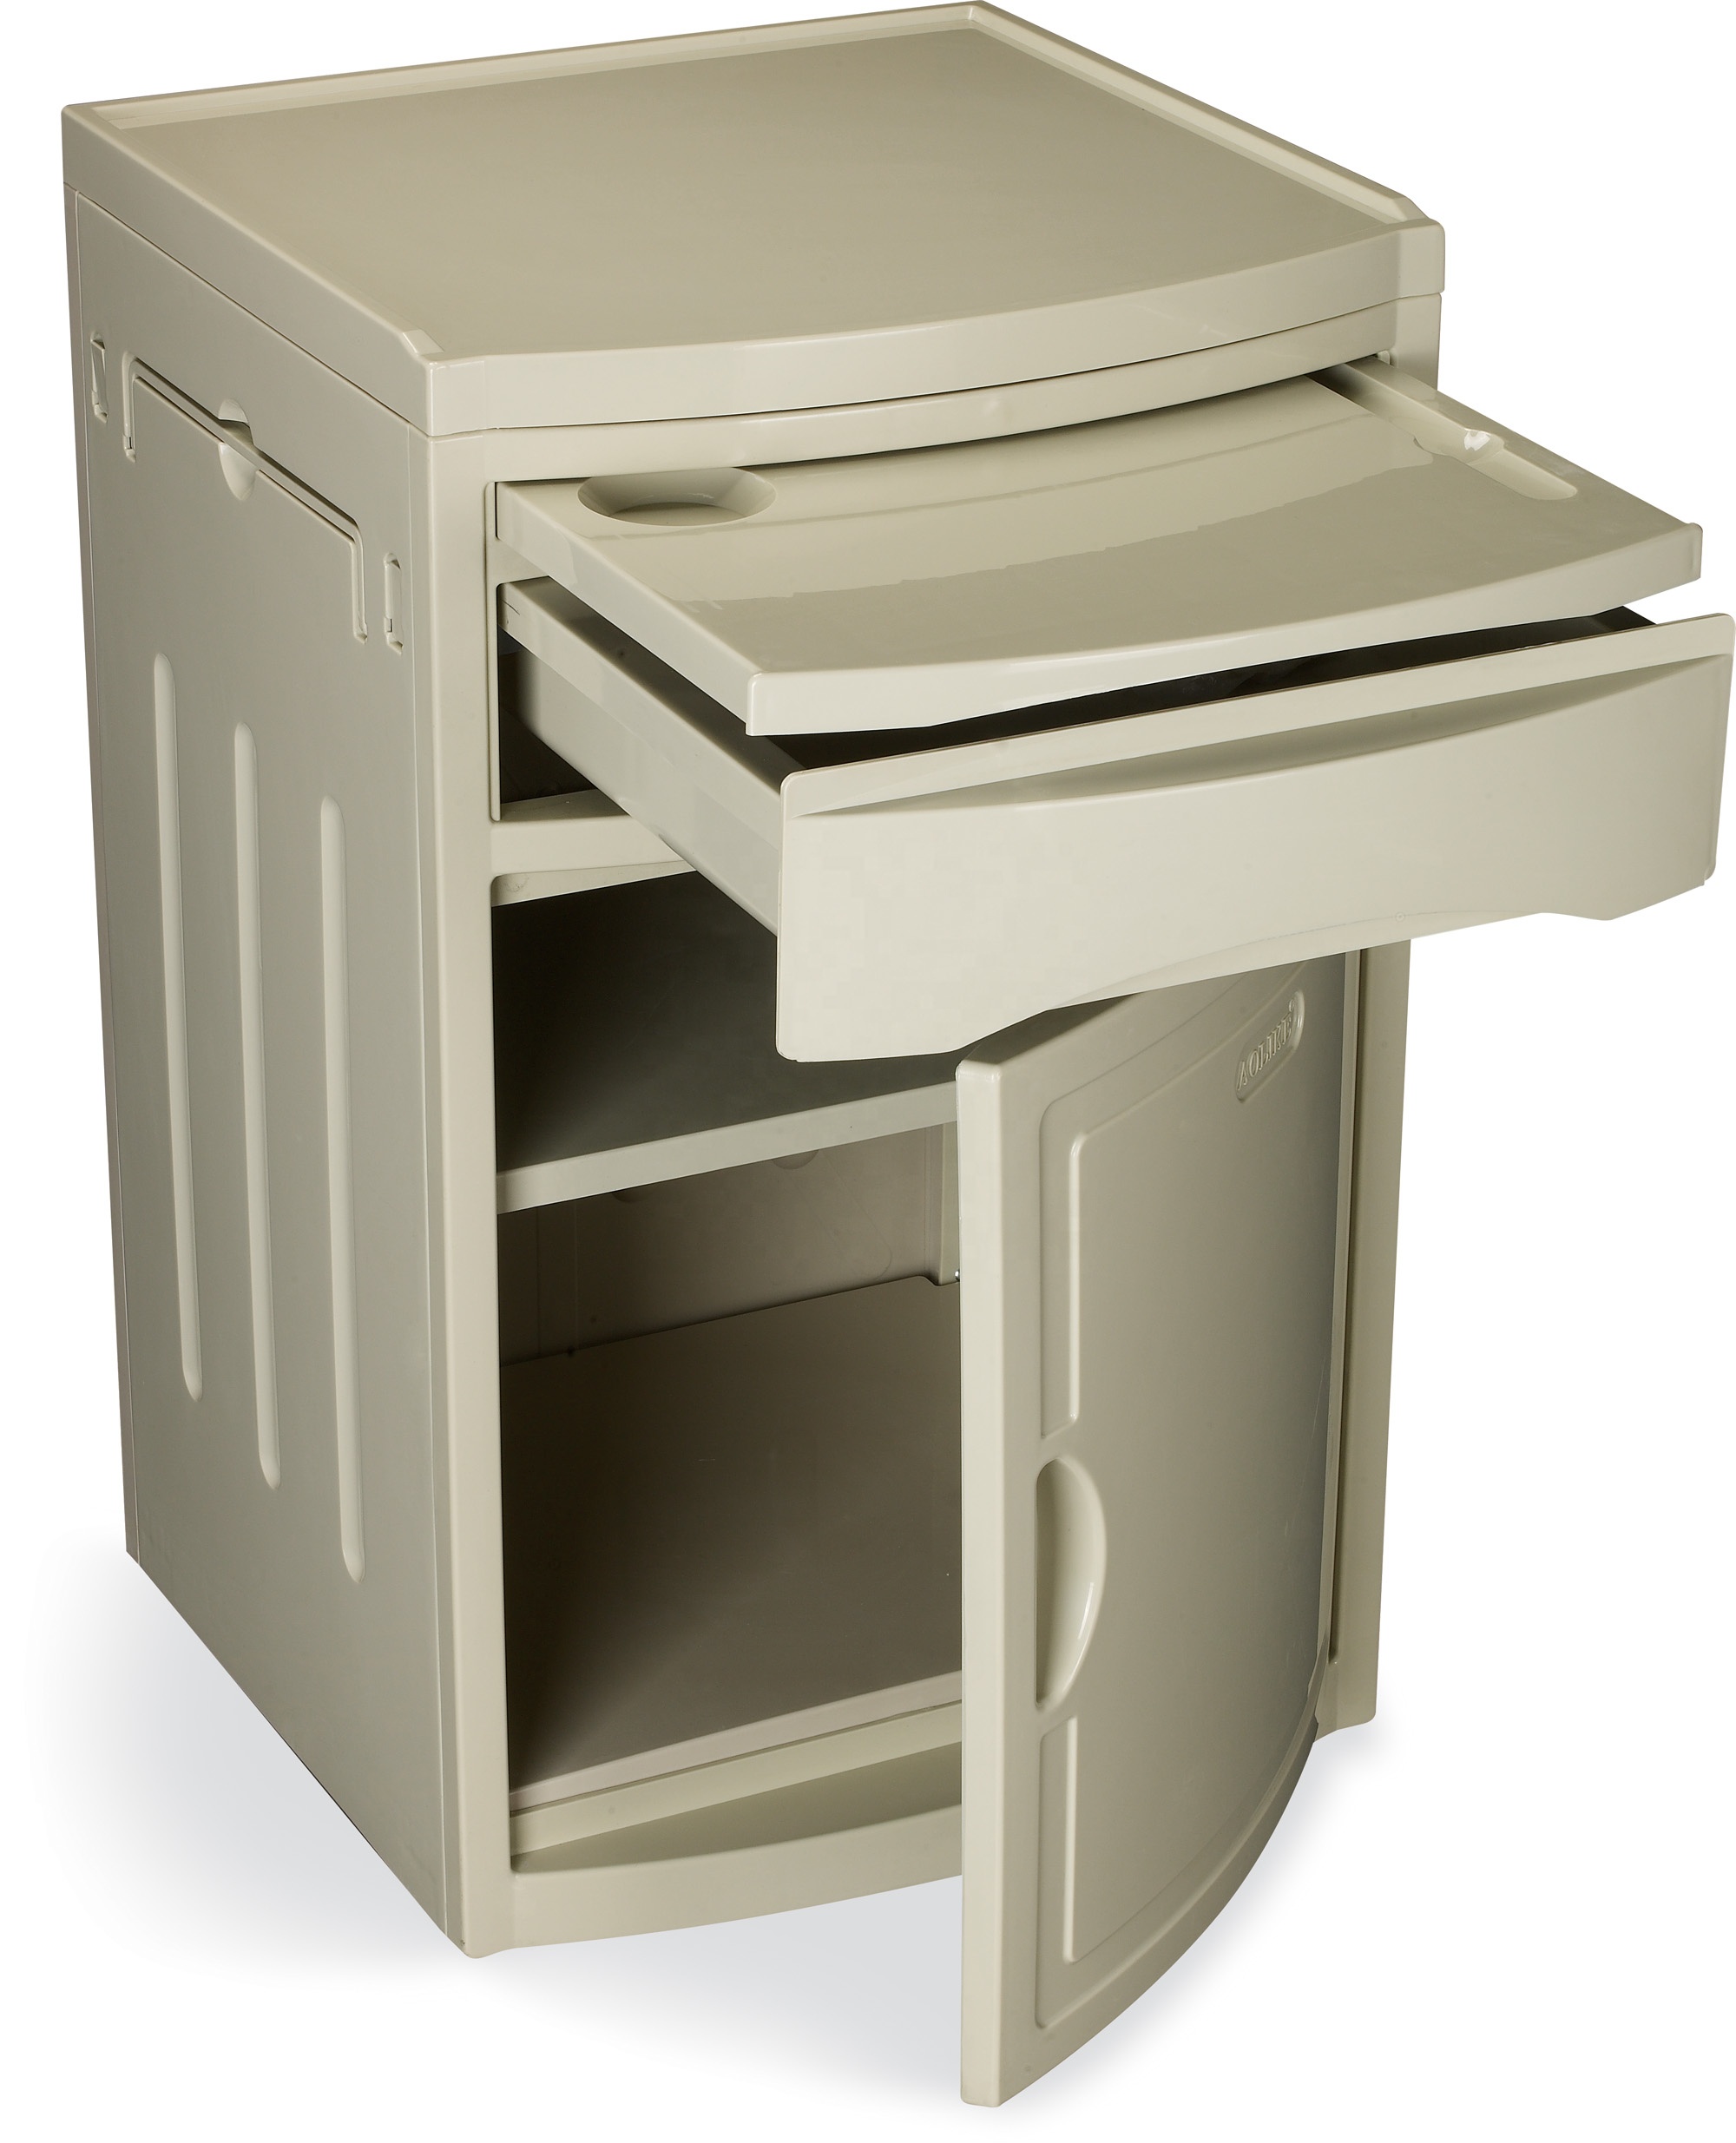 LG ABS Bedside Cabinet Hospital Cabinet Plastic Medicine Cabinet